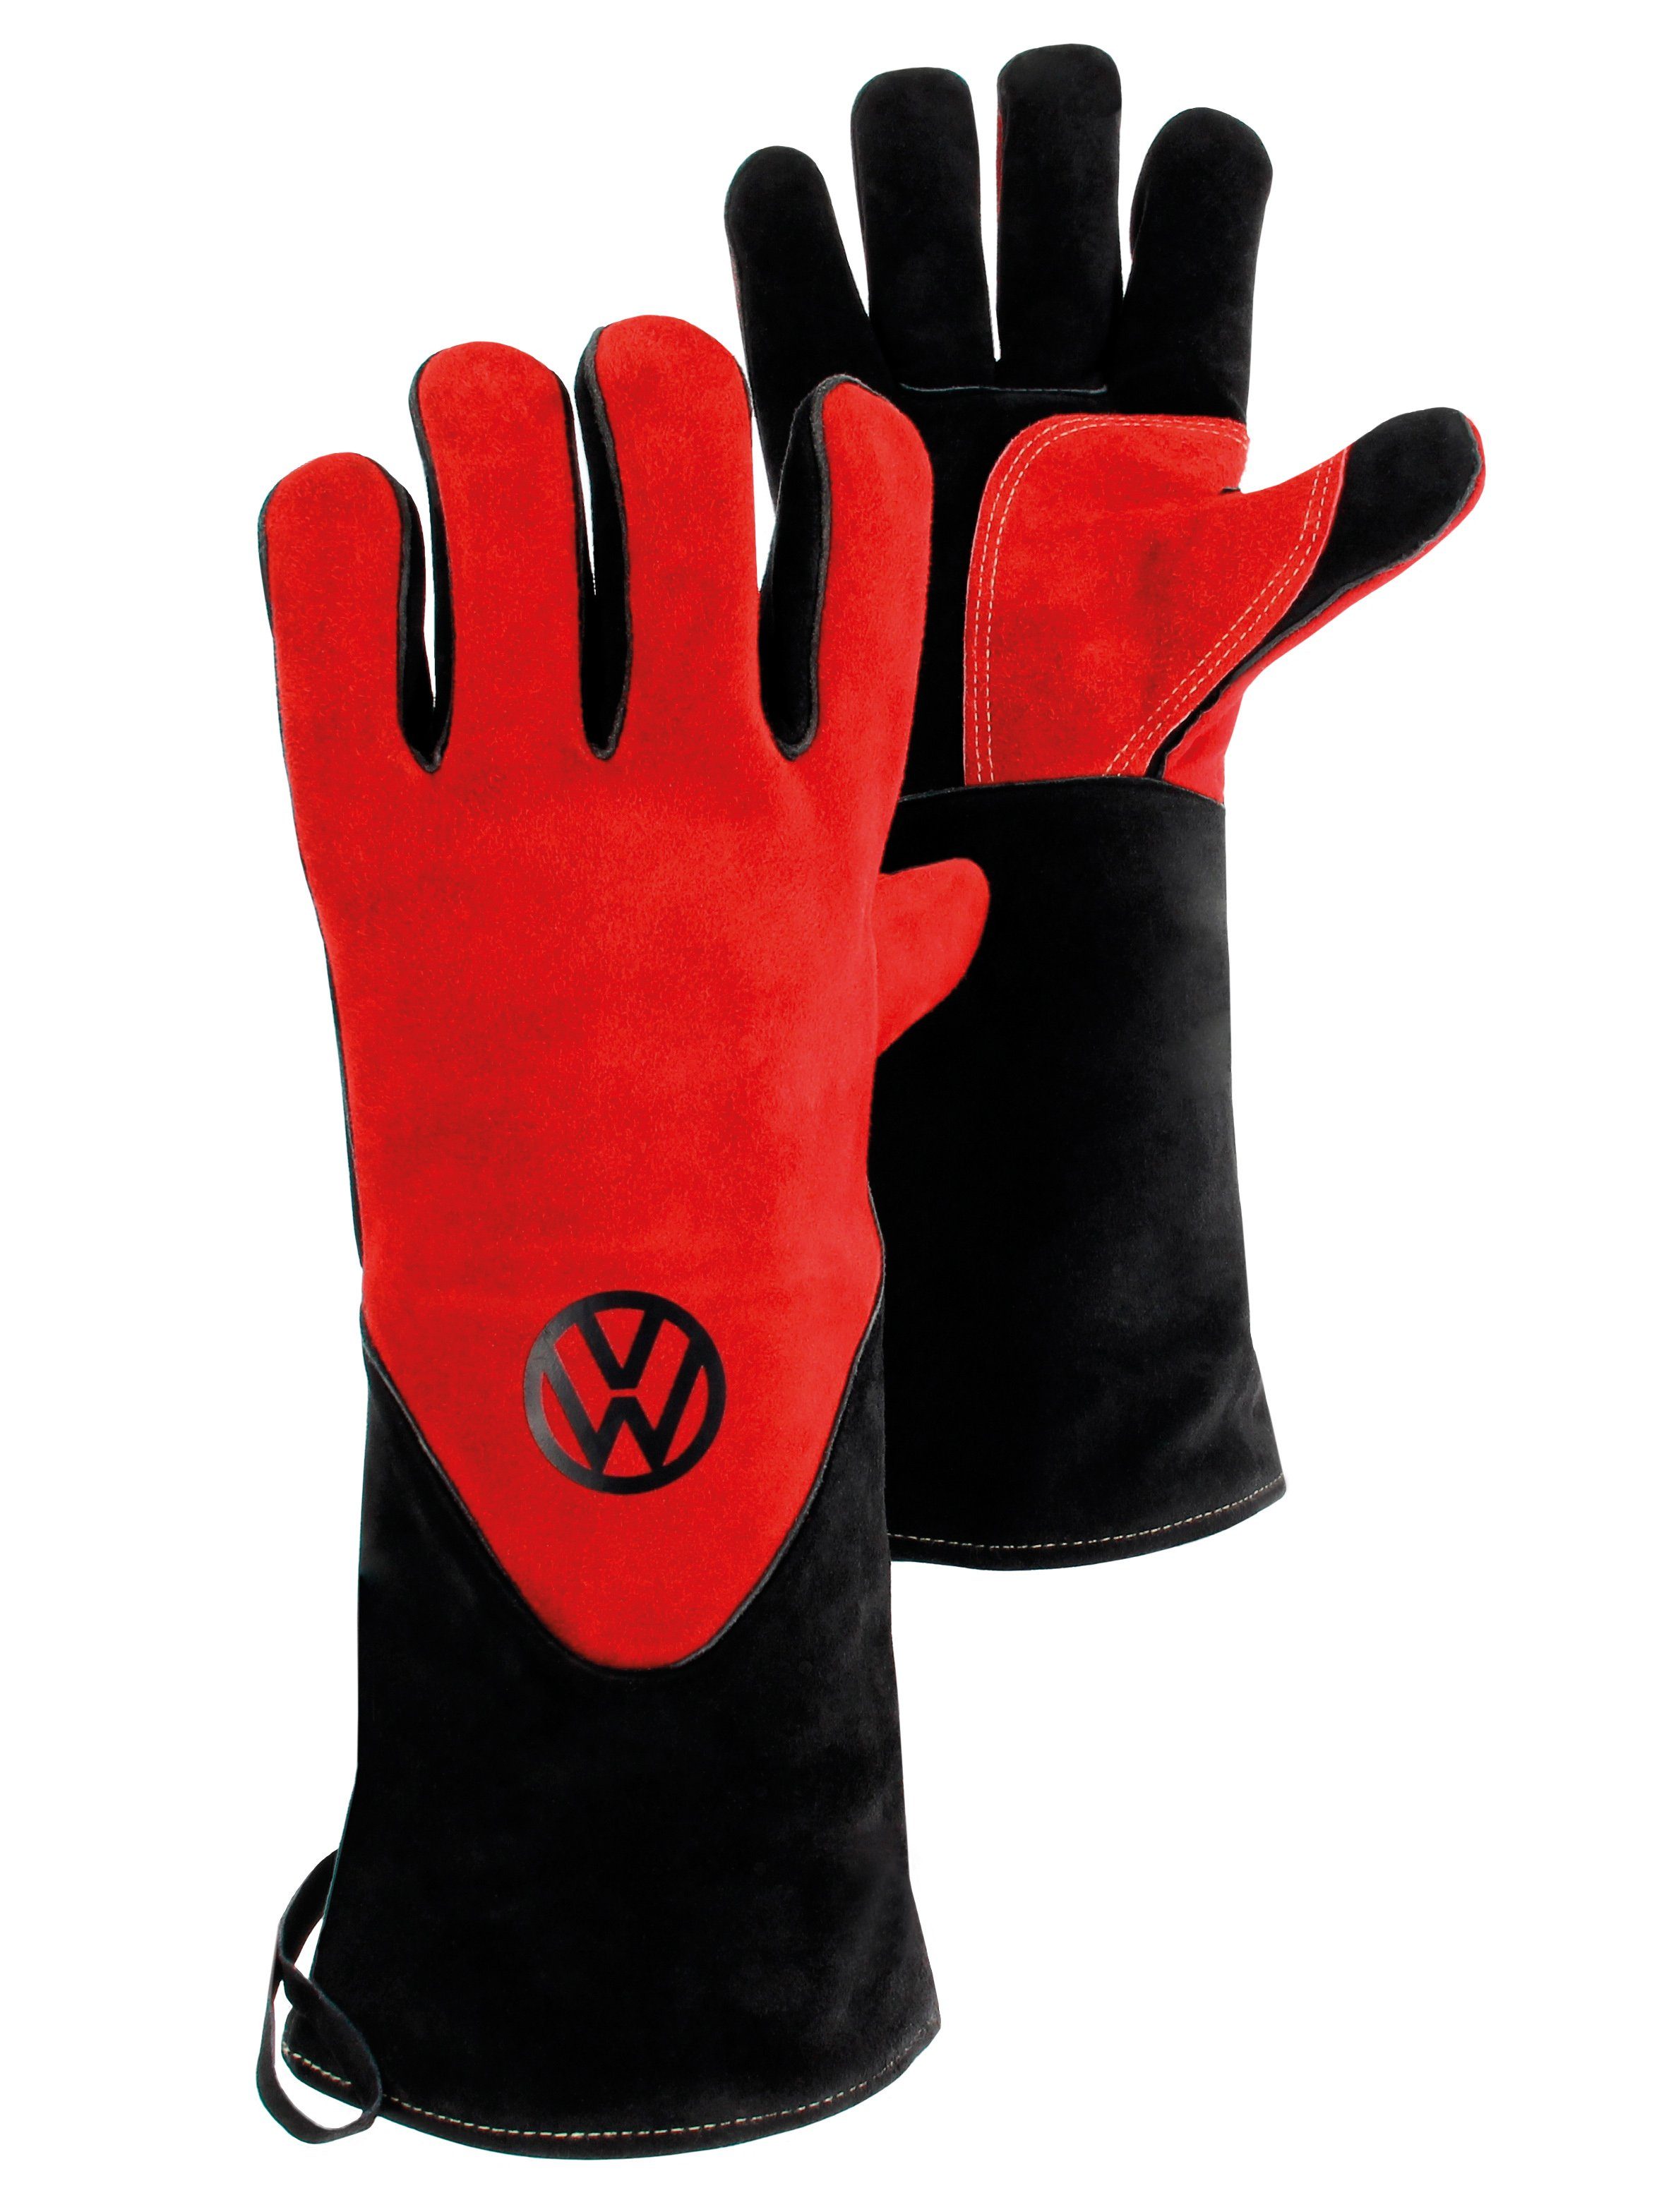 VW Collection by BRISA Grillhandschuhe Volkswagen Grillhandschuhe mit VW-Logo, (Paar, besteht aus 2 Grillhanschuhen), hitzebeständige BBQ-Handschuhe in rot